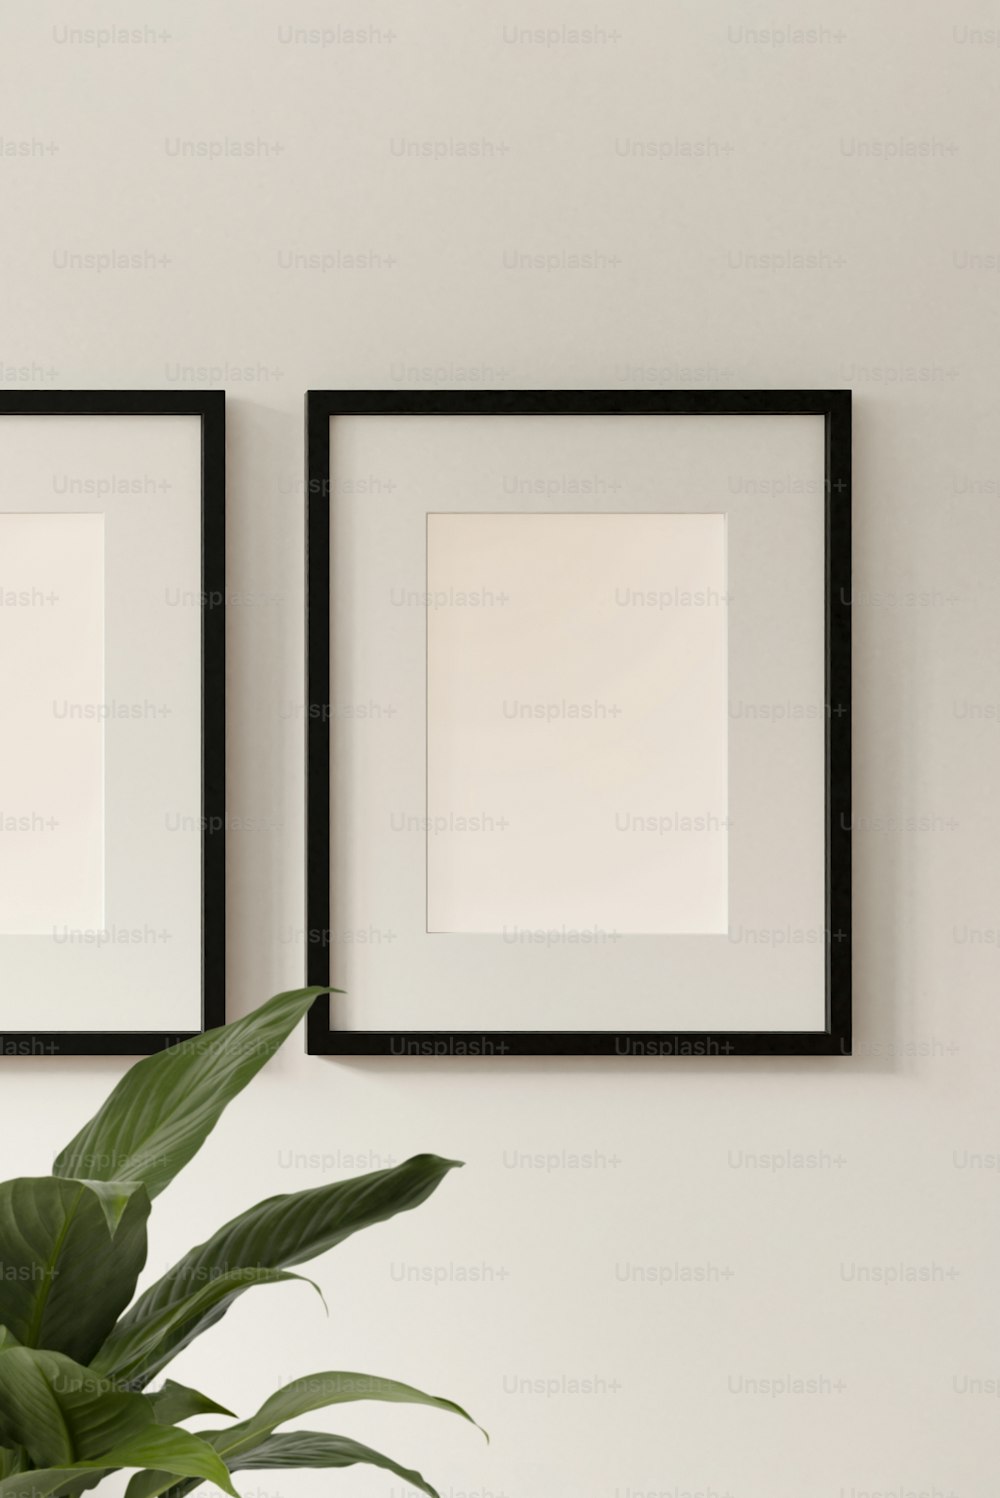 Dos marcos en blanco y negro en una pared sobre una planta en maceta